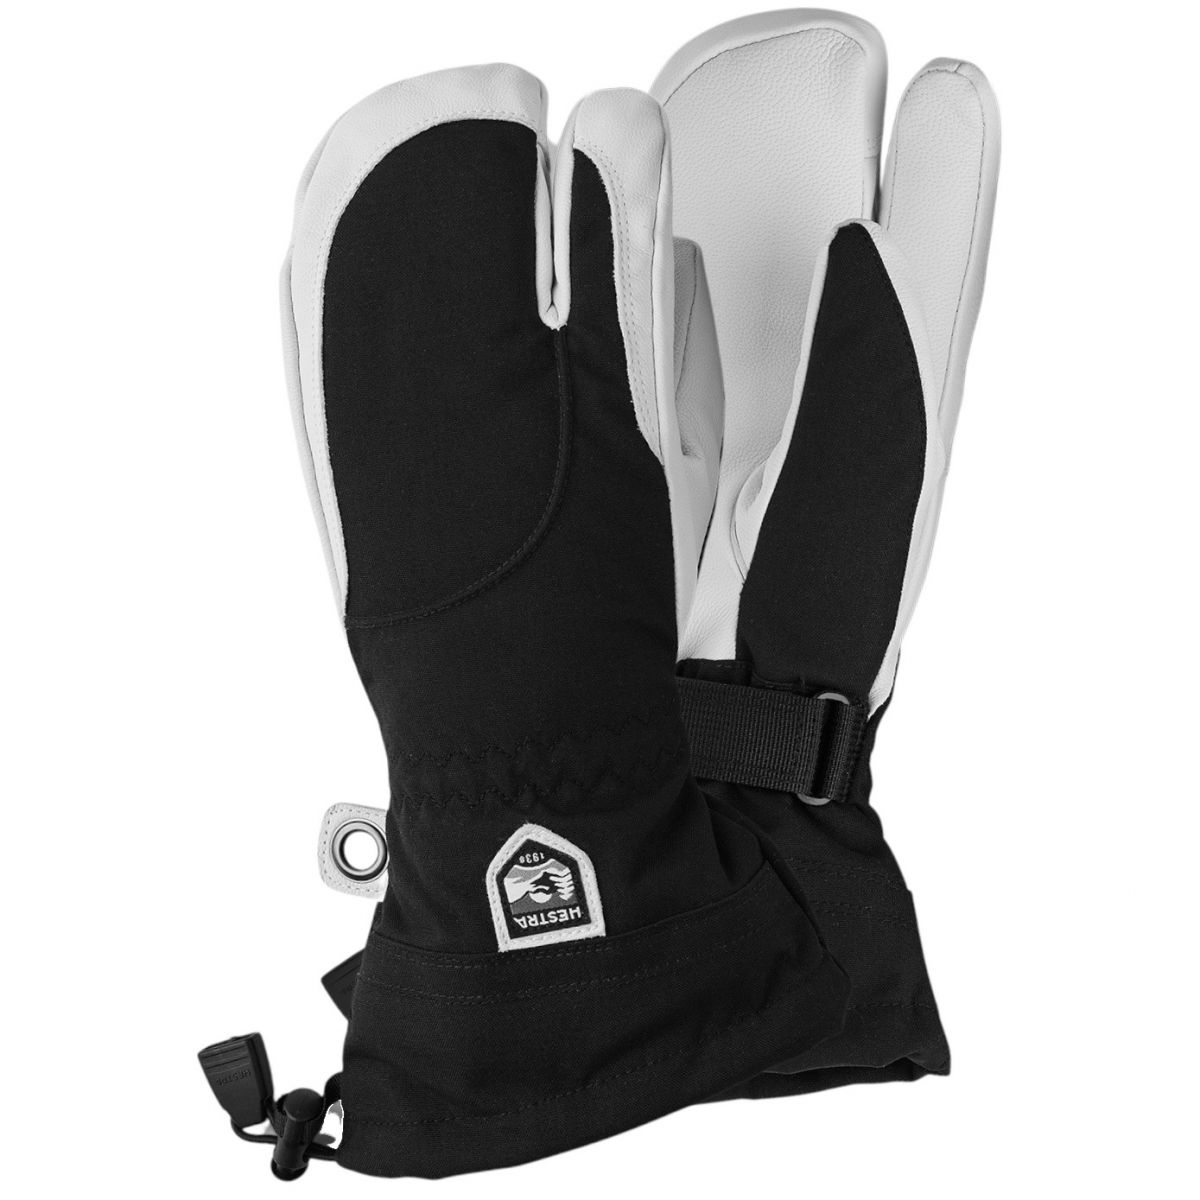 Hestra Heli Ski, 3-finger ski gloves, women, black